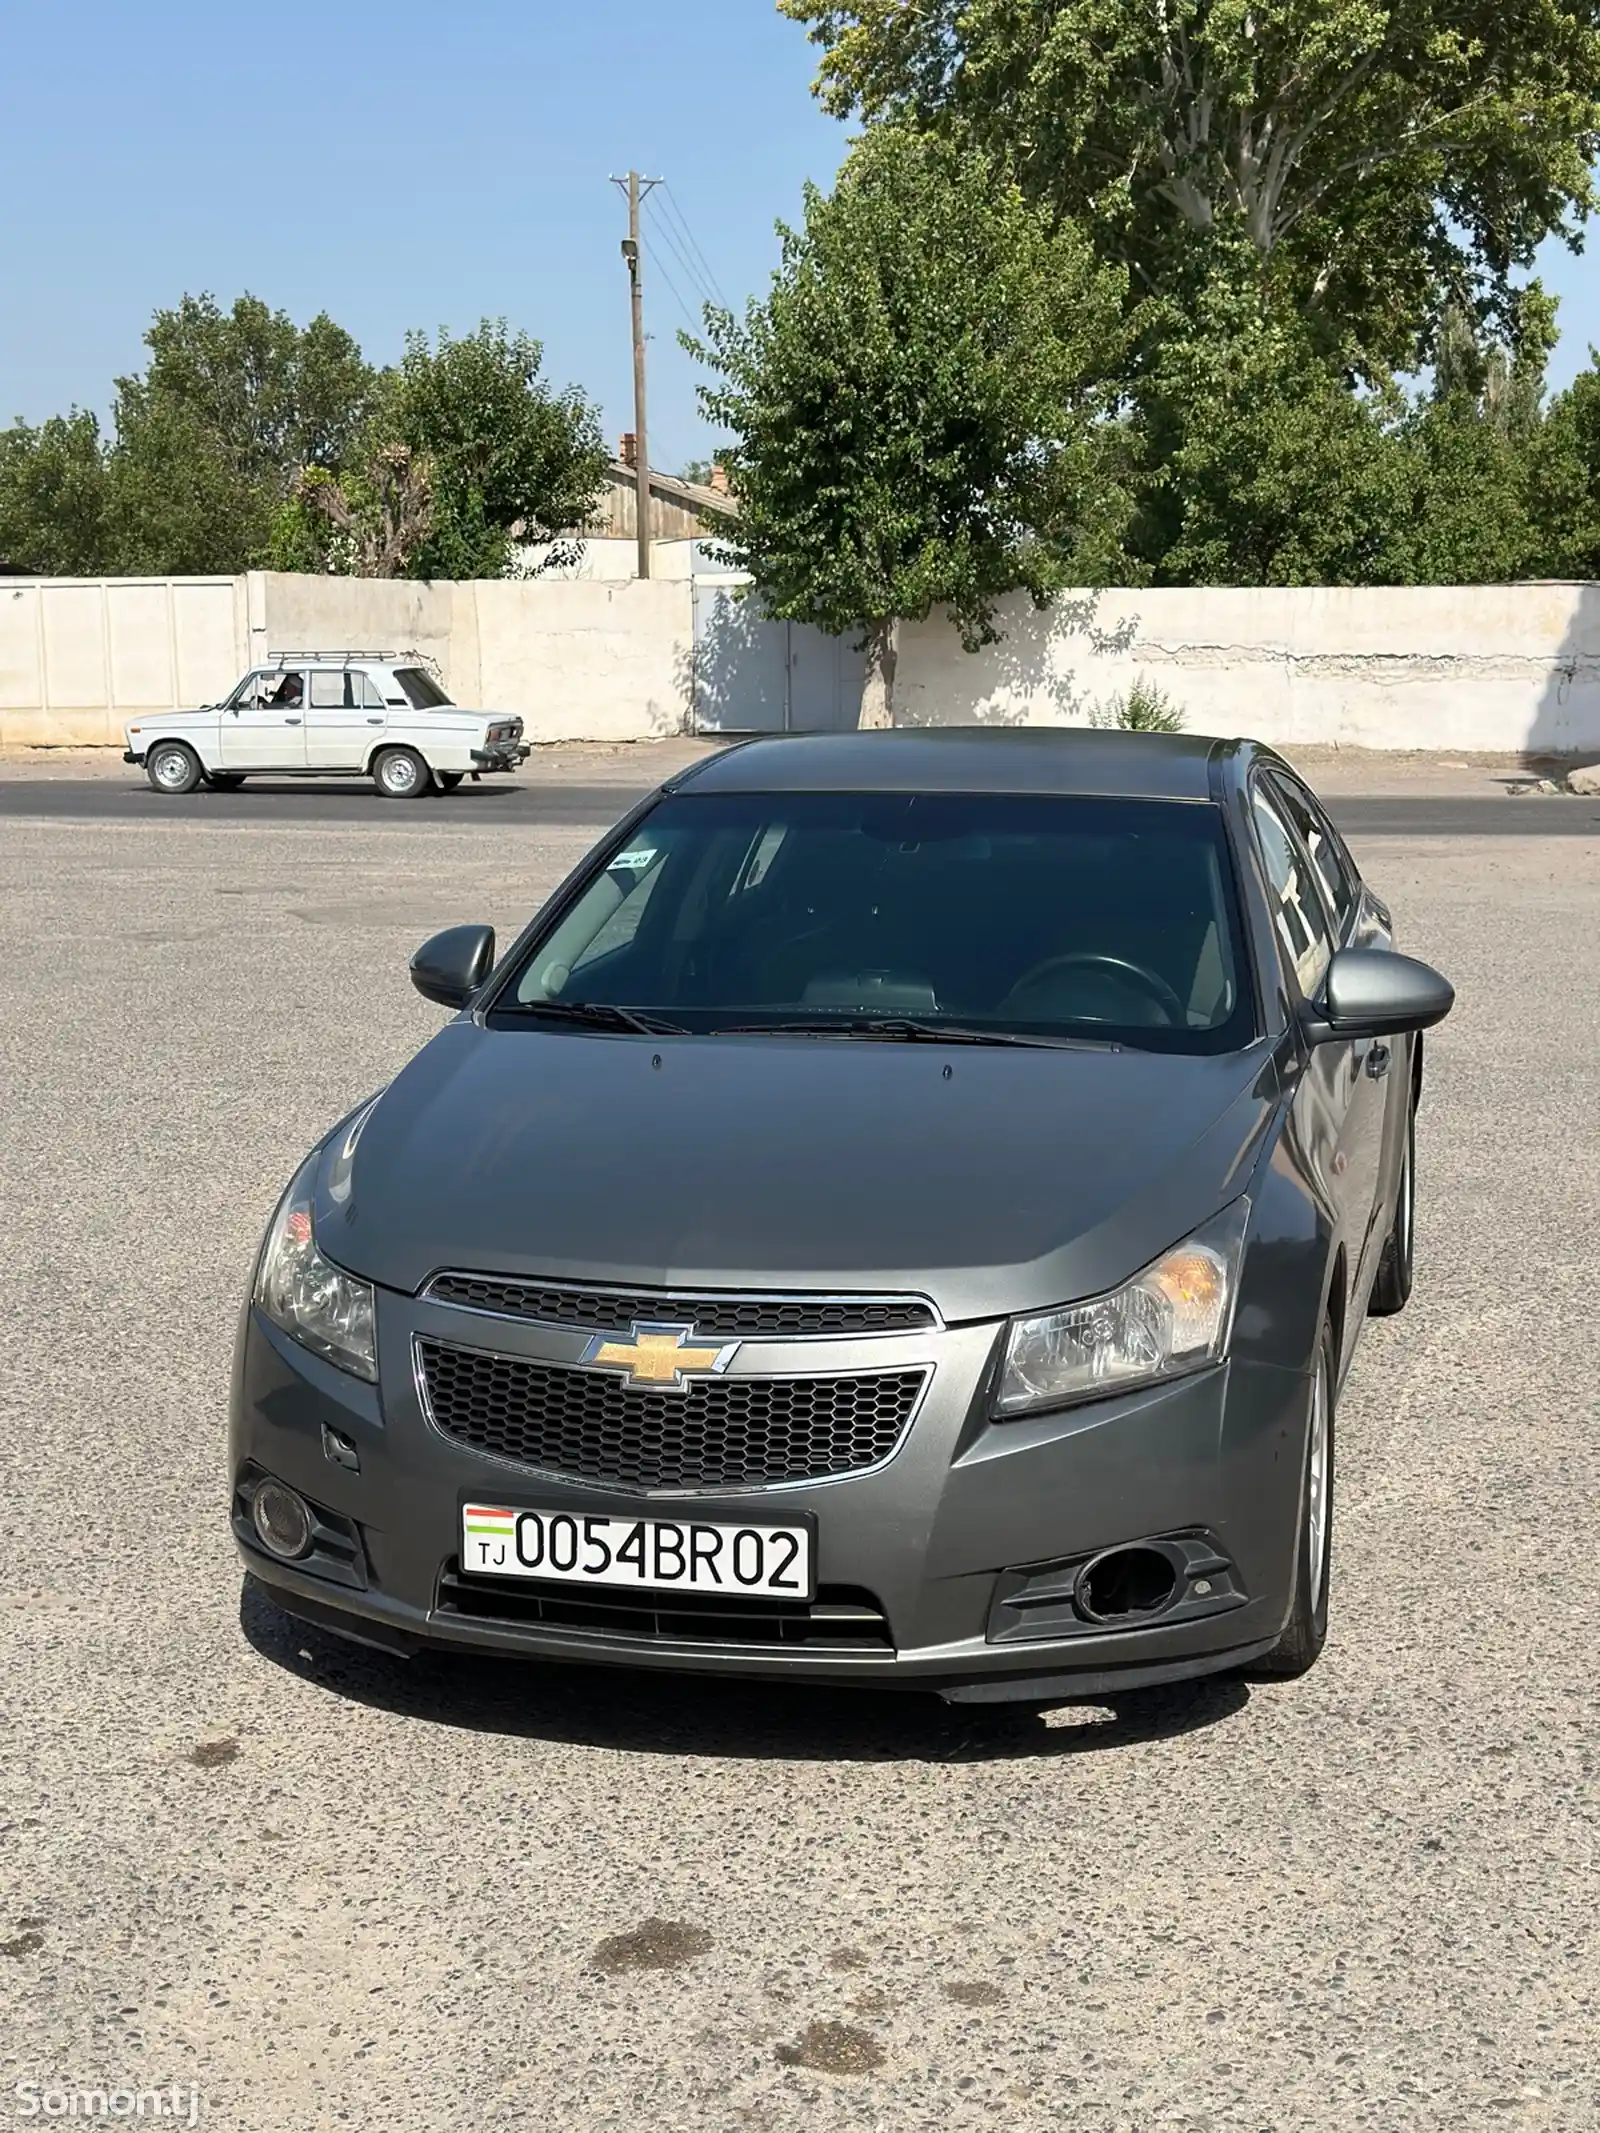 Chevrolet Cruze, 2009-11